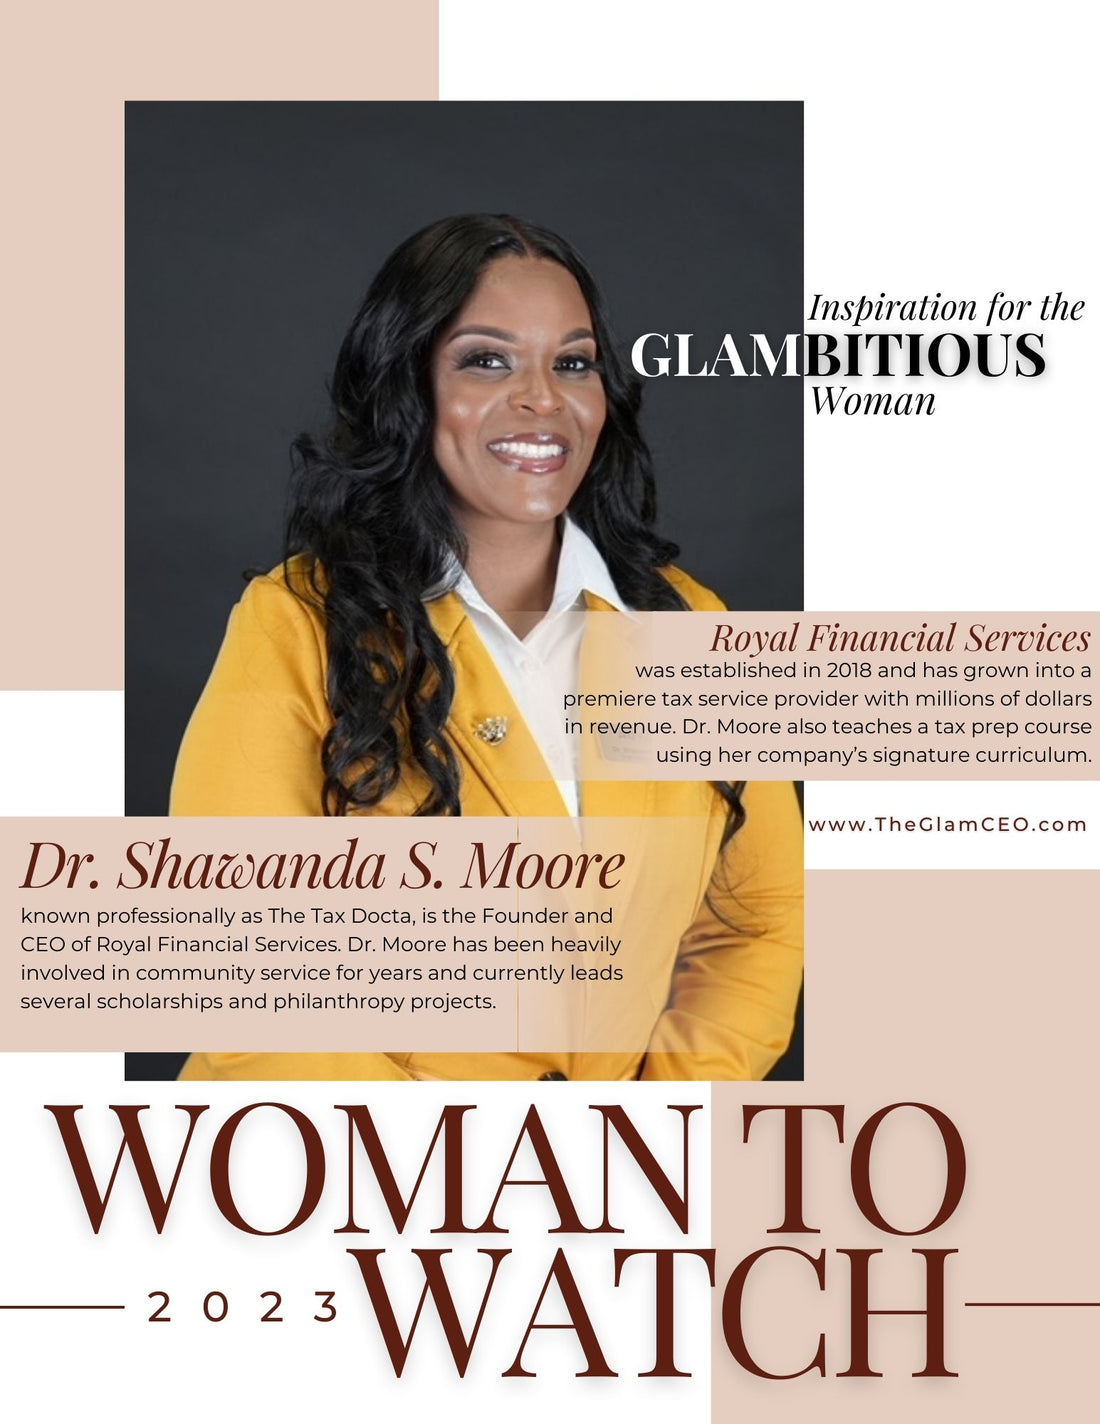 2023 Woman to Watch: Dr. Shawanda Moore